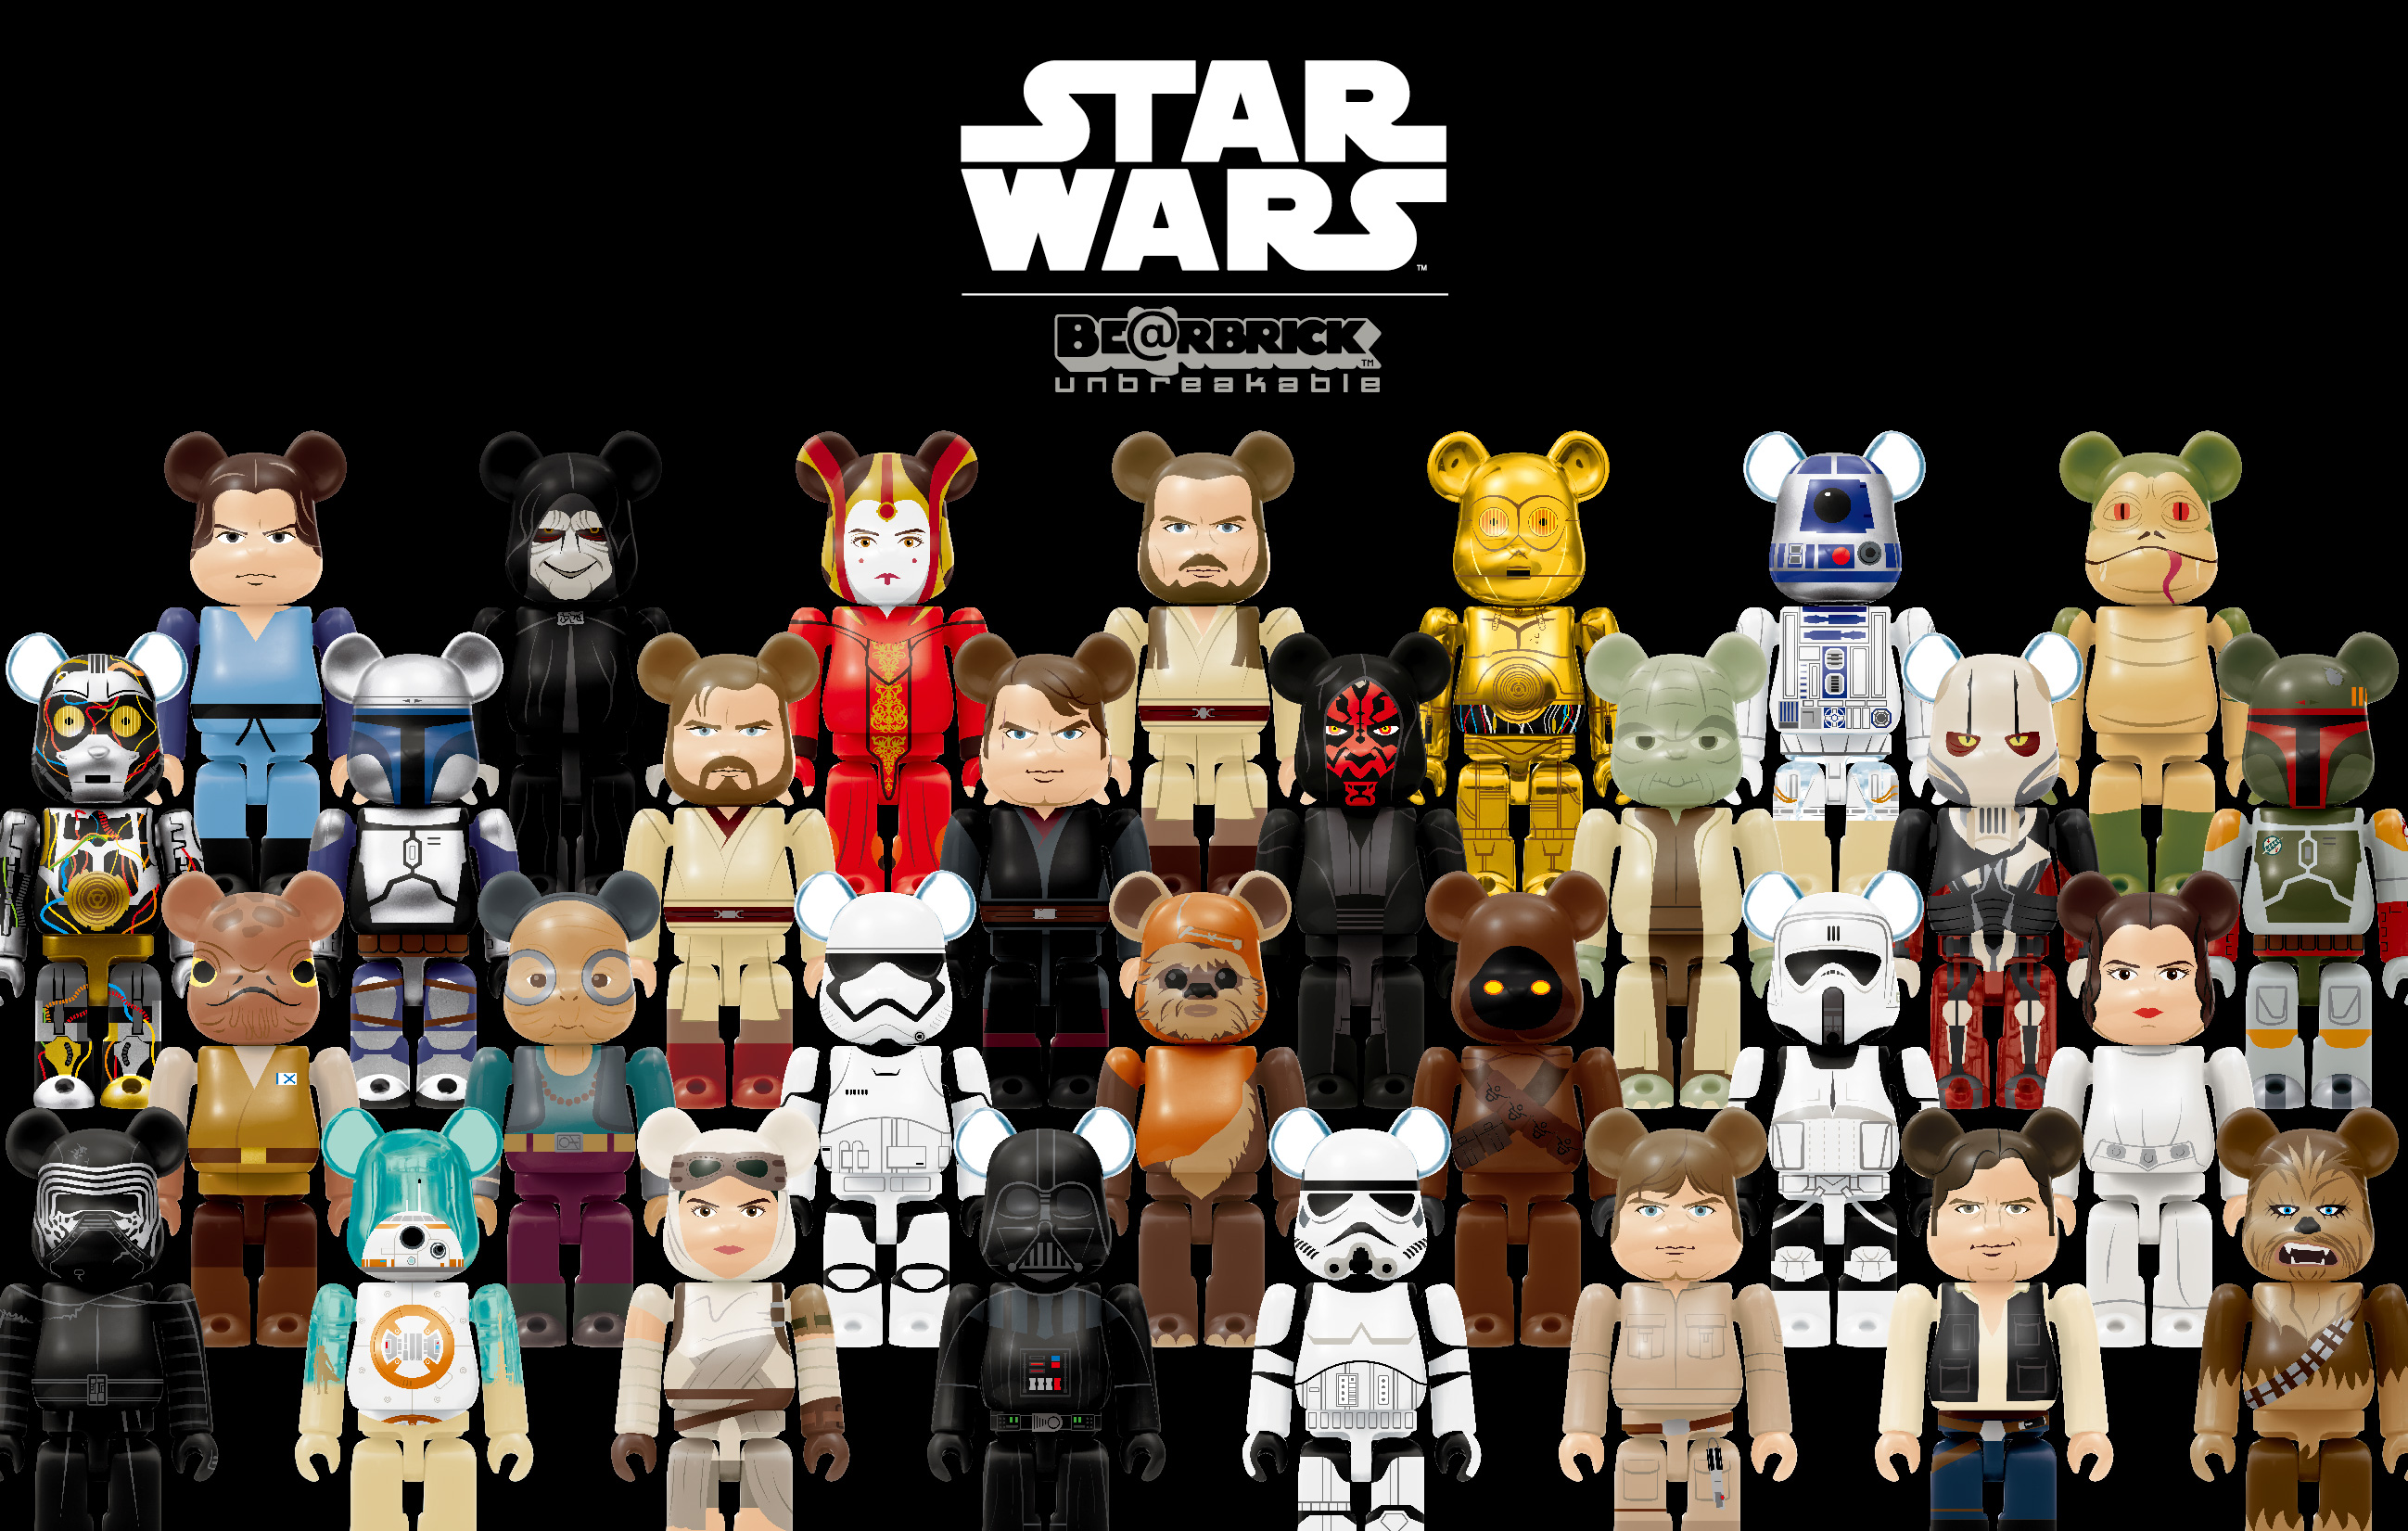 Happyくじ Star Wars Be Rbrick 全38種画像公開 セブン イレブンで明日8月31日発売 スター ウォーズ ウェブログ